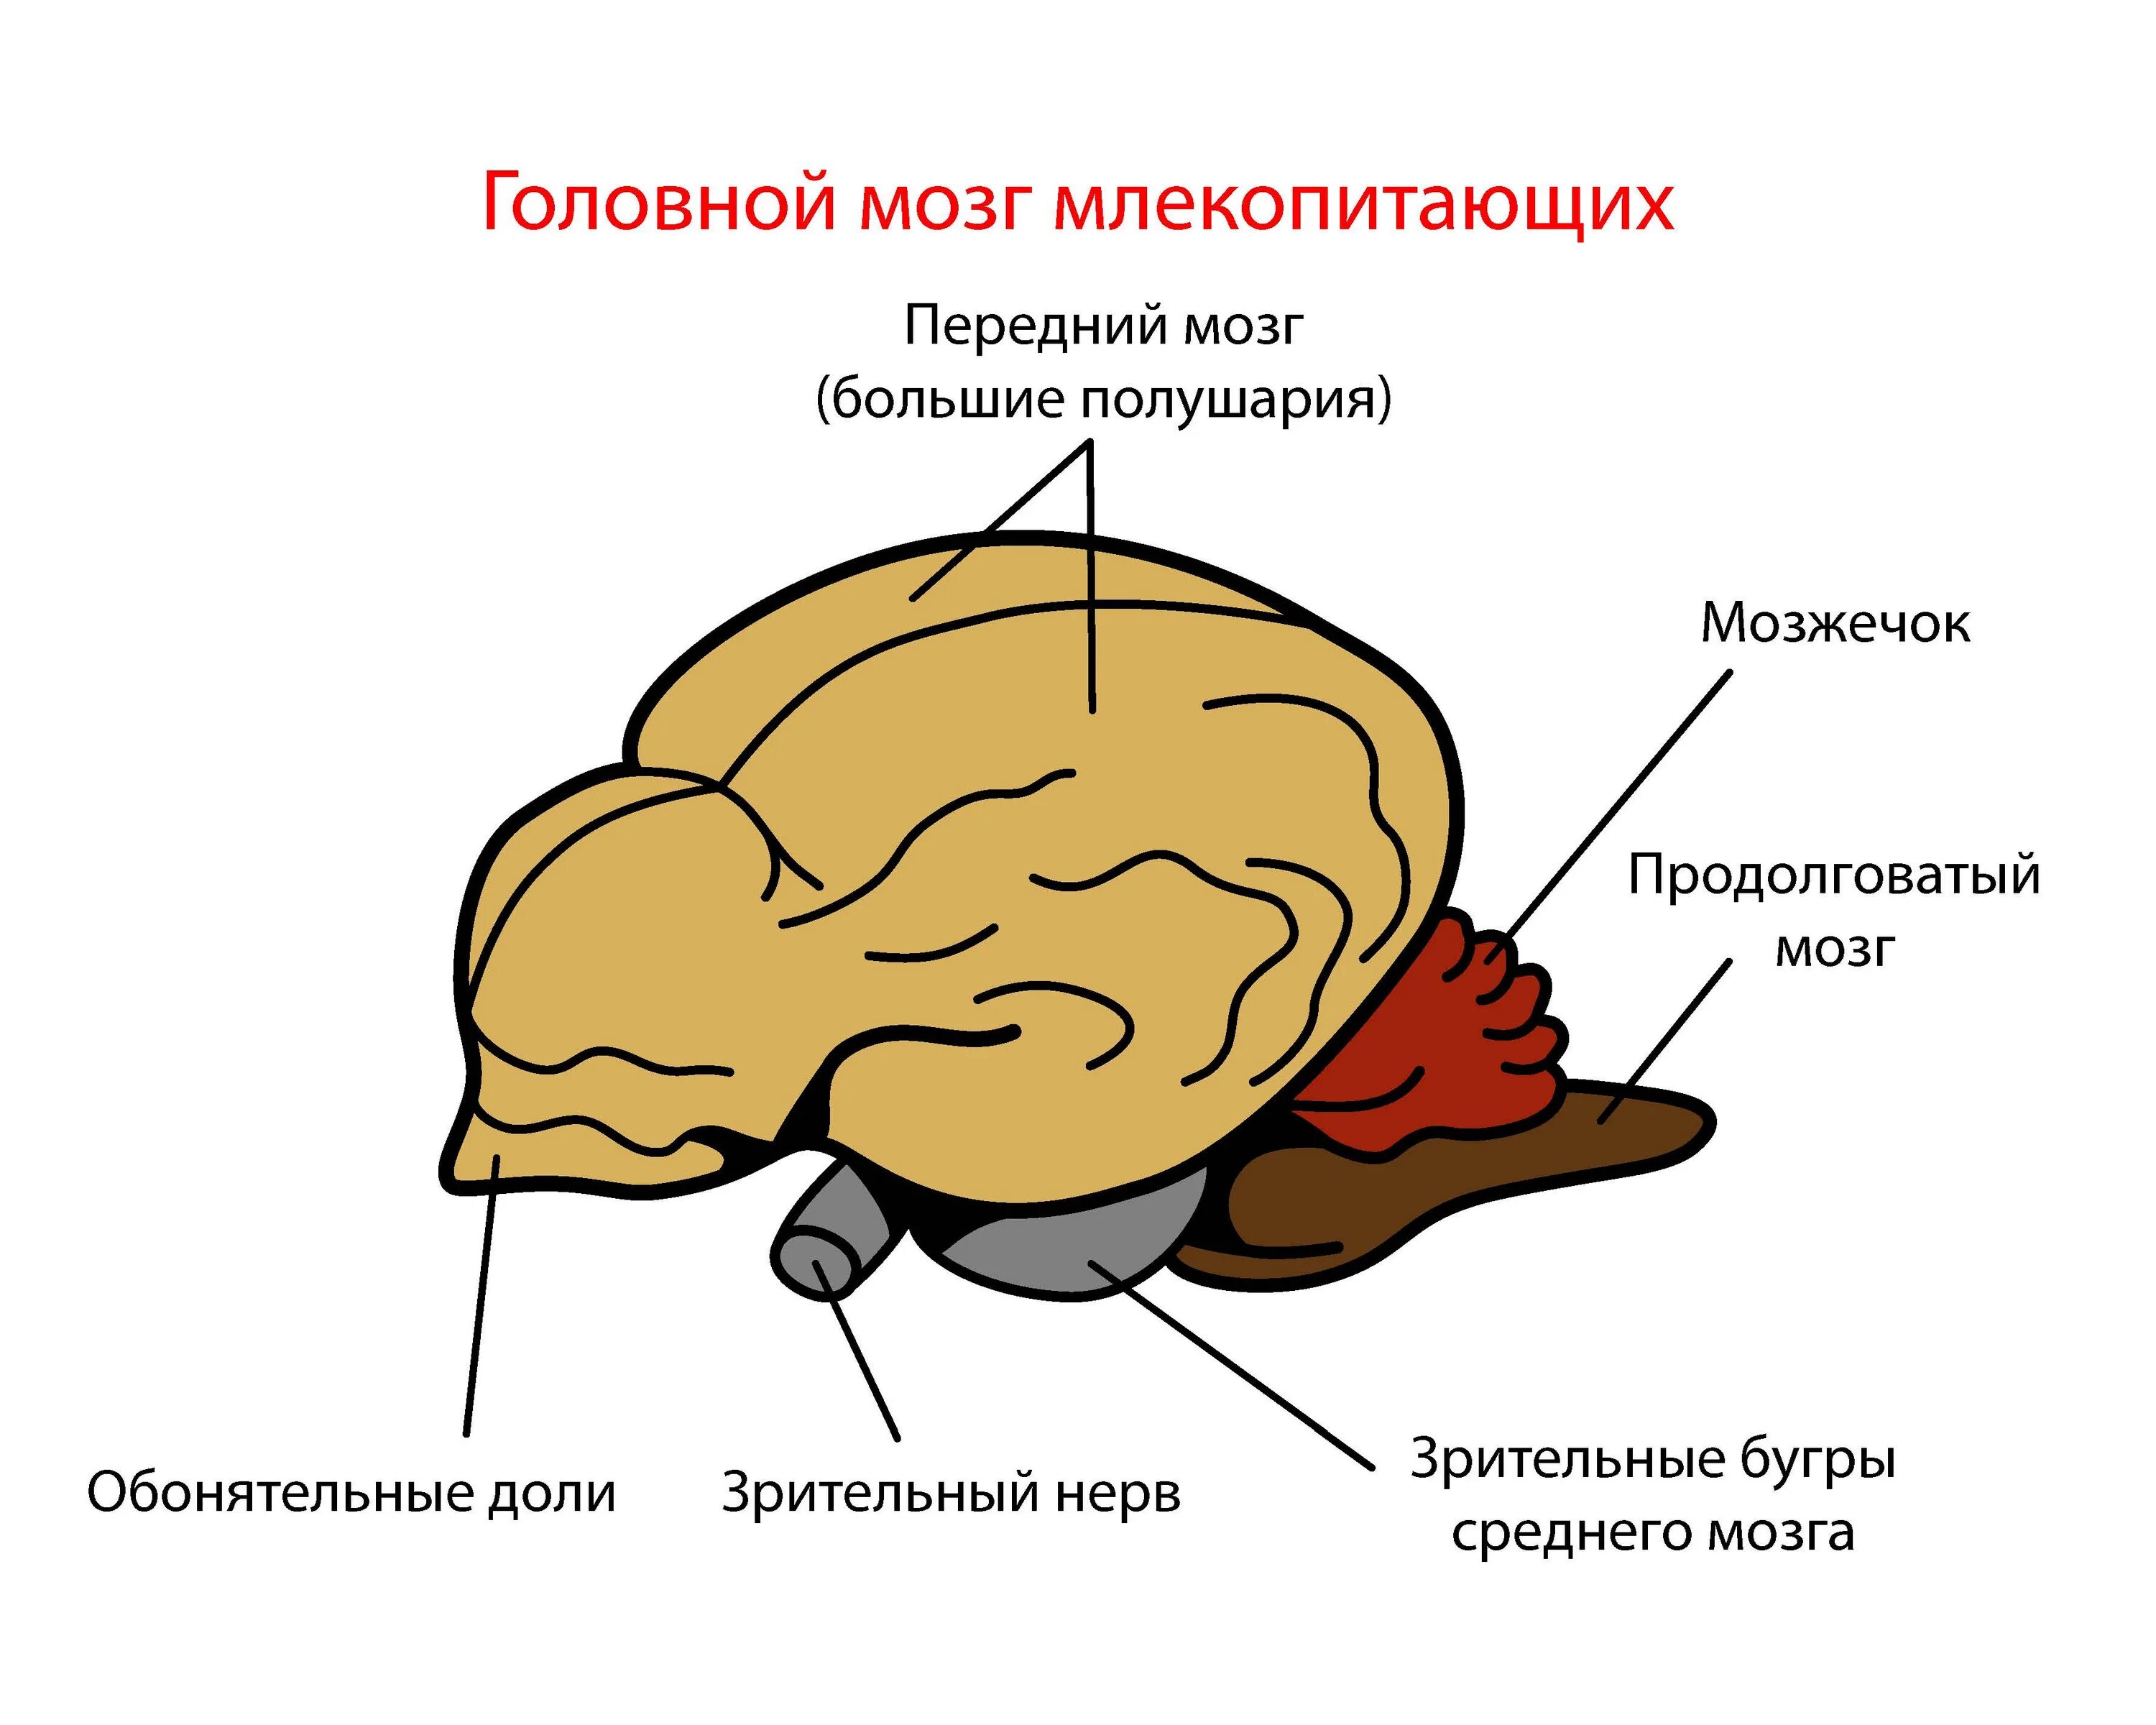 Как называется отдел головного мозга млекопитающих. Головной мозг млекопитающих. Отделы головного мозга млекопитающих. Строение головного мозга млекопитающих. Мозг млекопитающего рисунок.